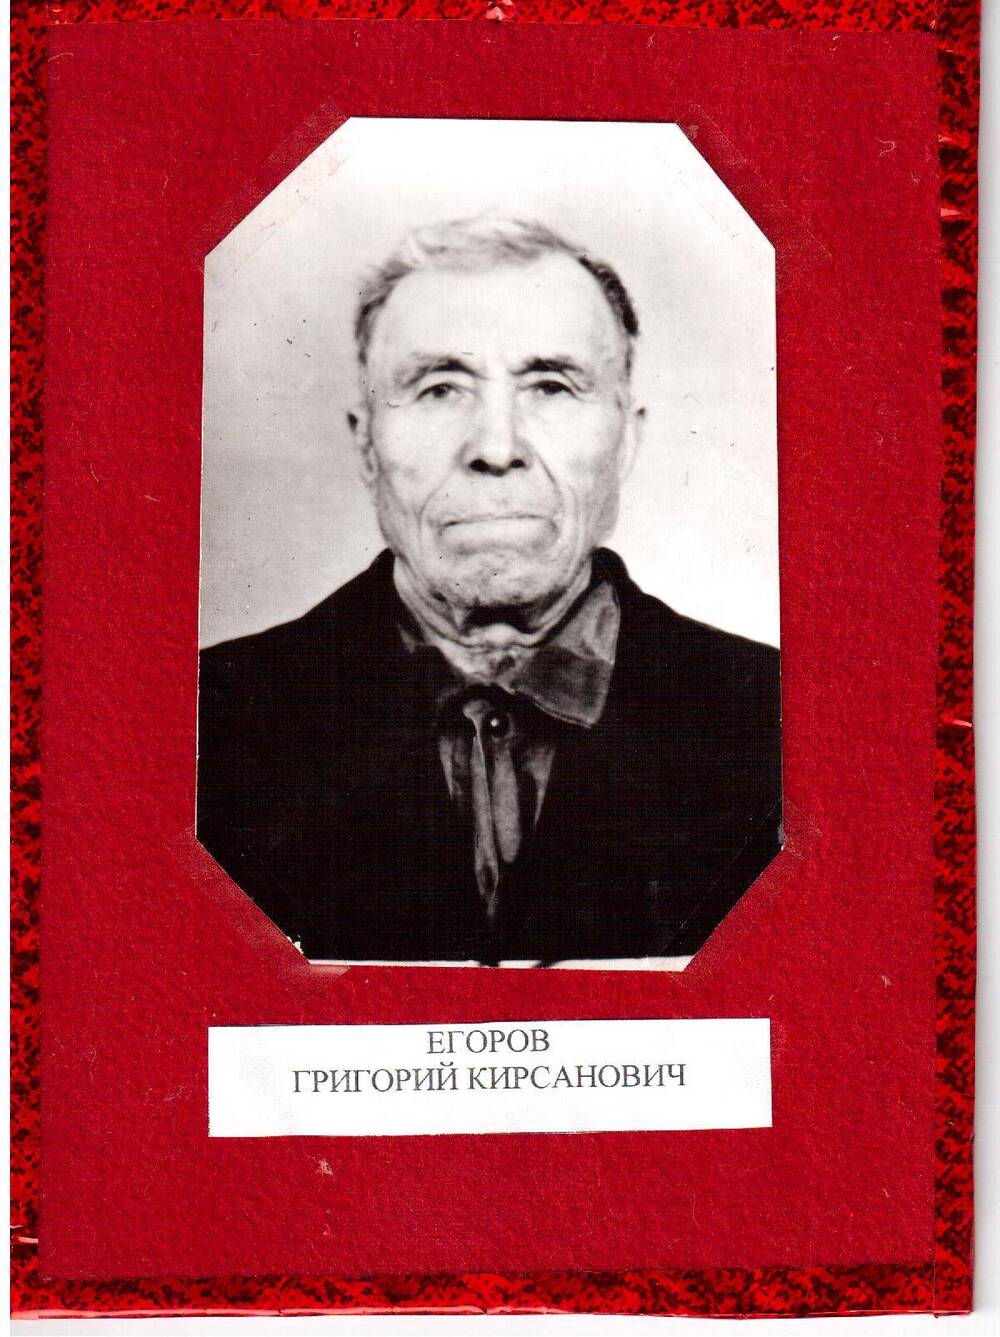 Фотография черно белая. Портрет ветерана ВОВ - Егоров Григорий Кирсанович.